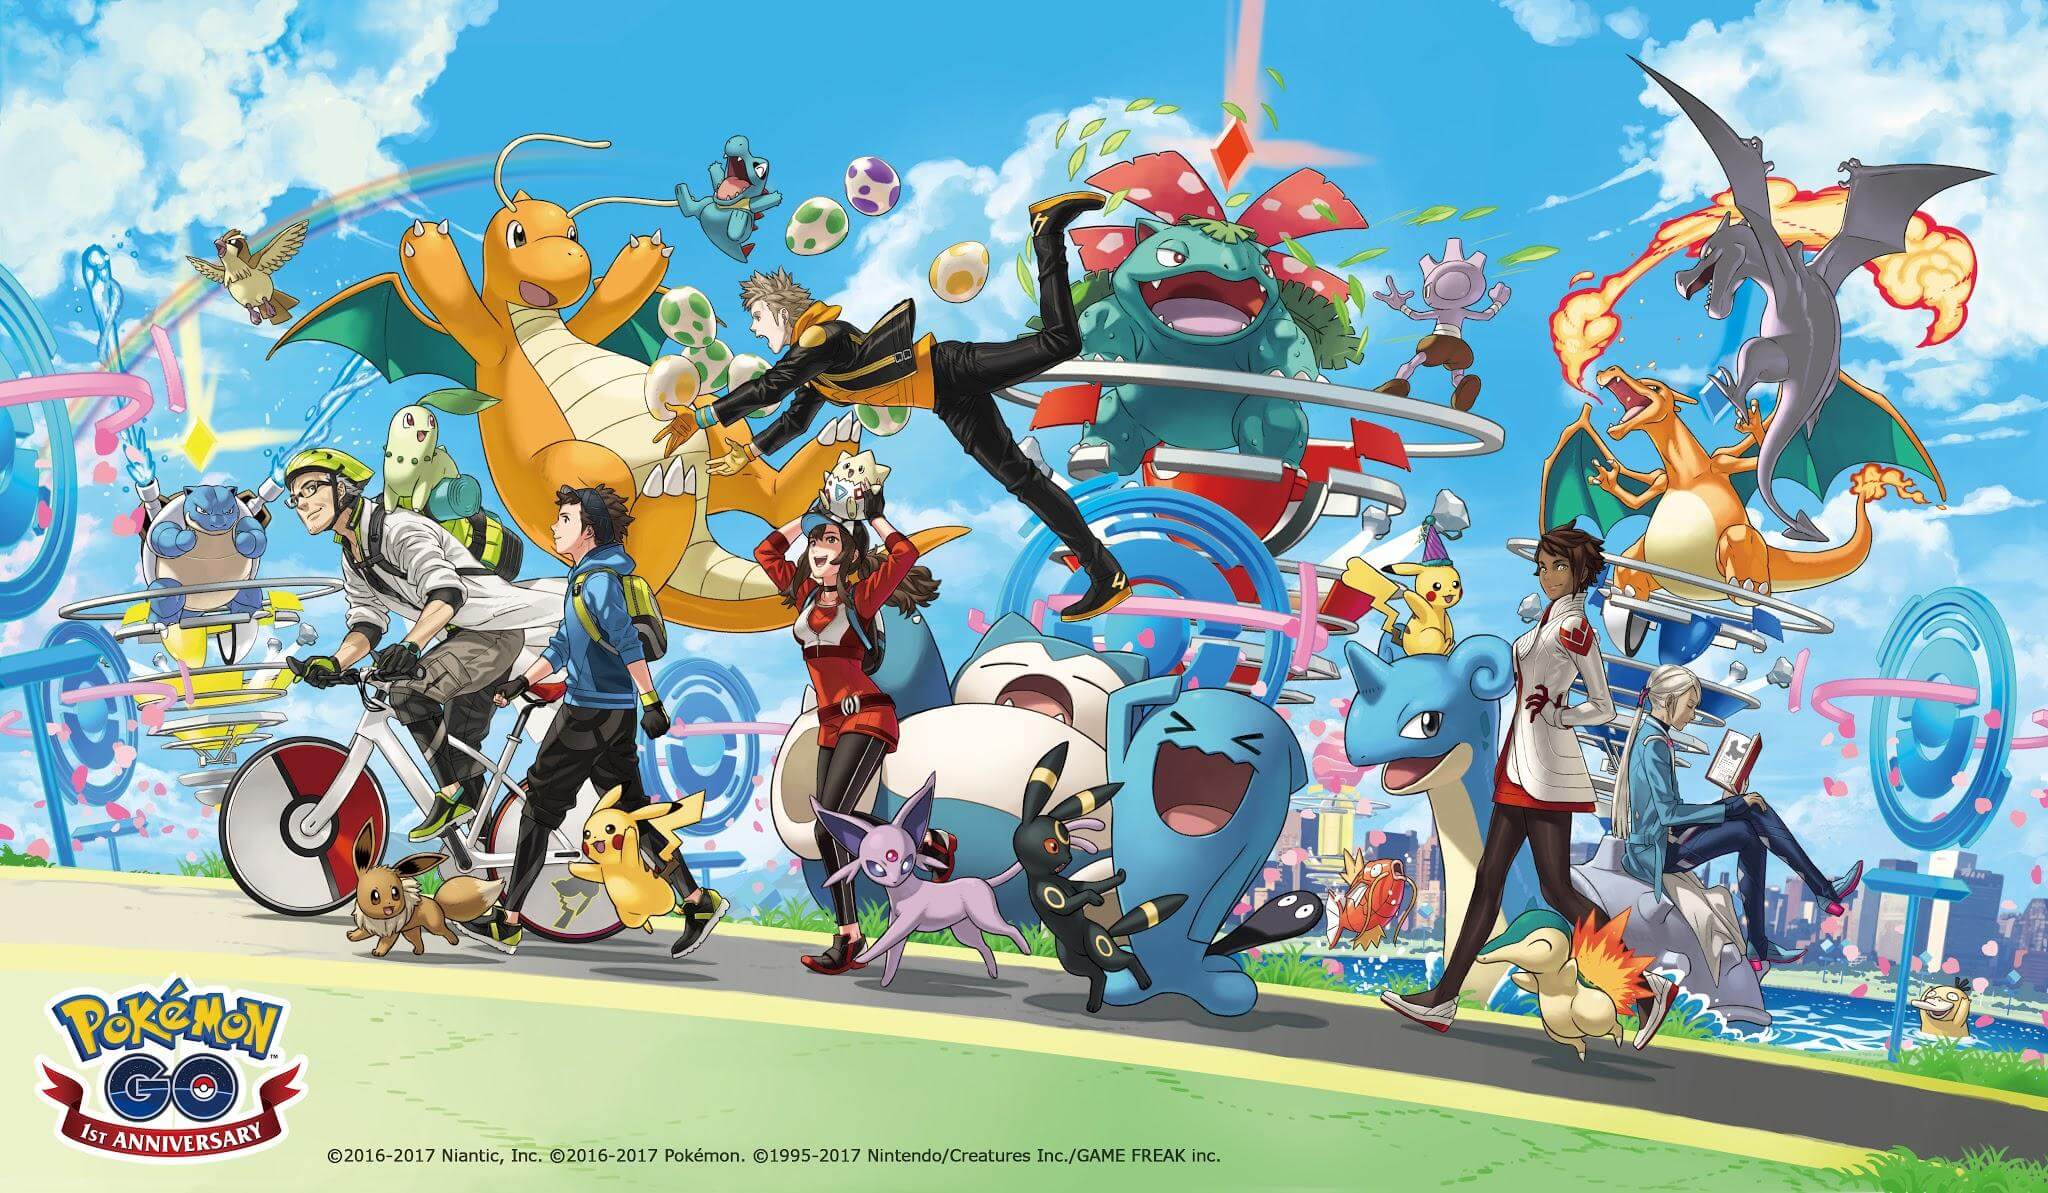 Feliz aniversário! Pokémon go completa um ano com pikachu temático